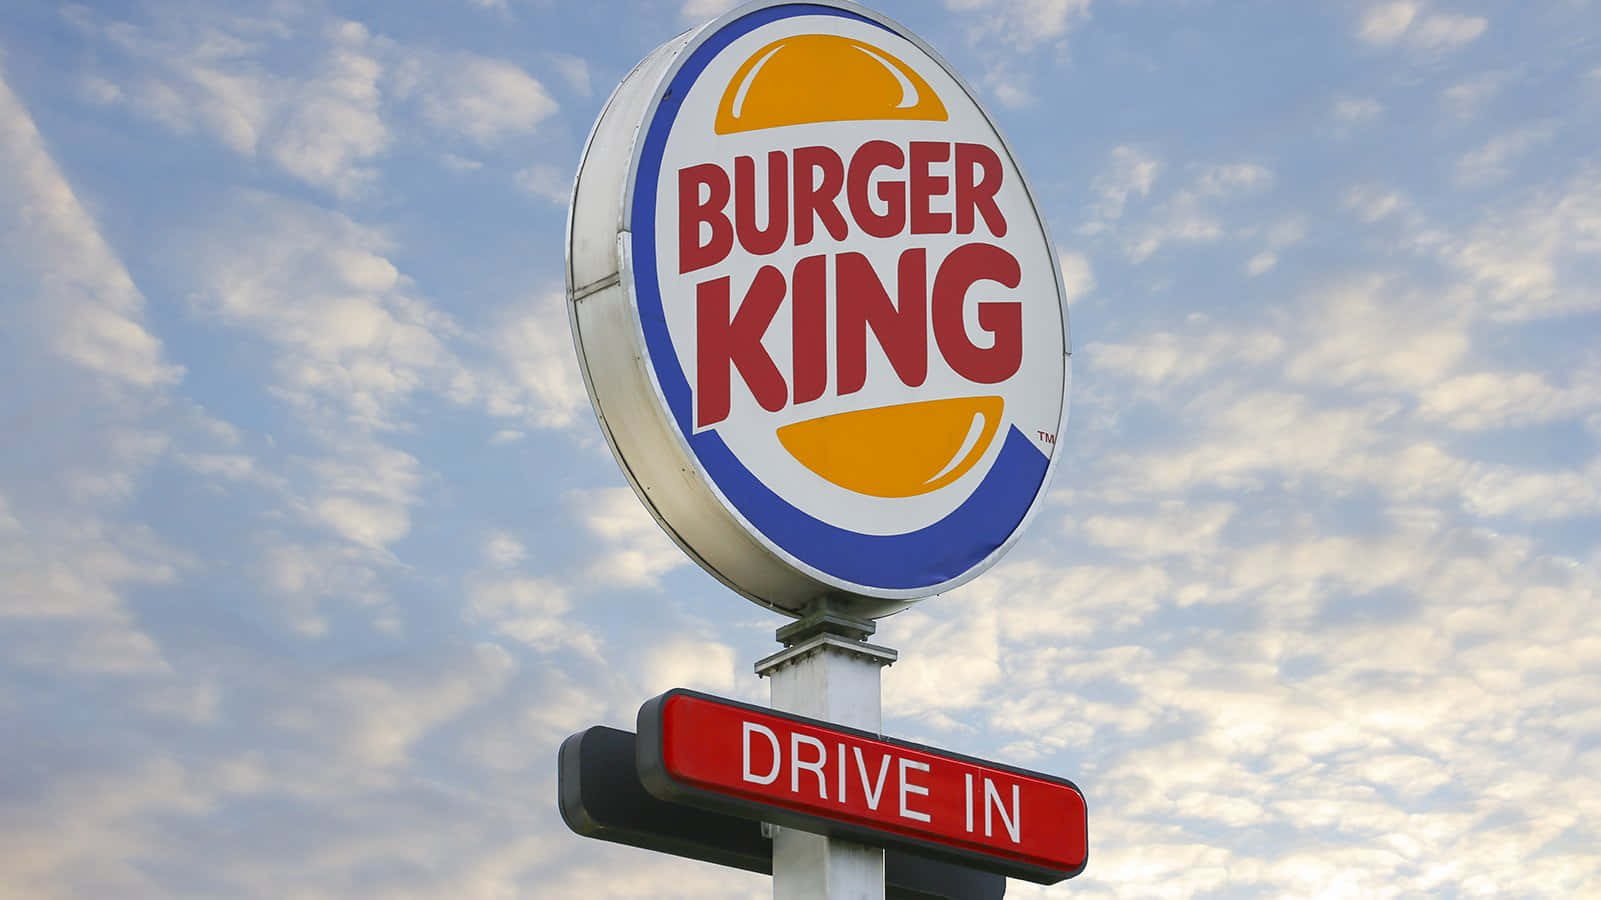 Upplevsmaken Av Kungen På Burger King!